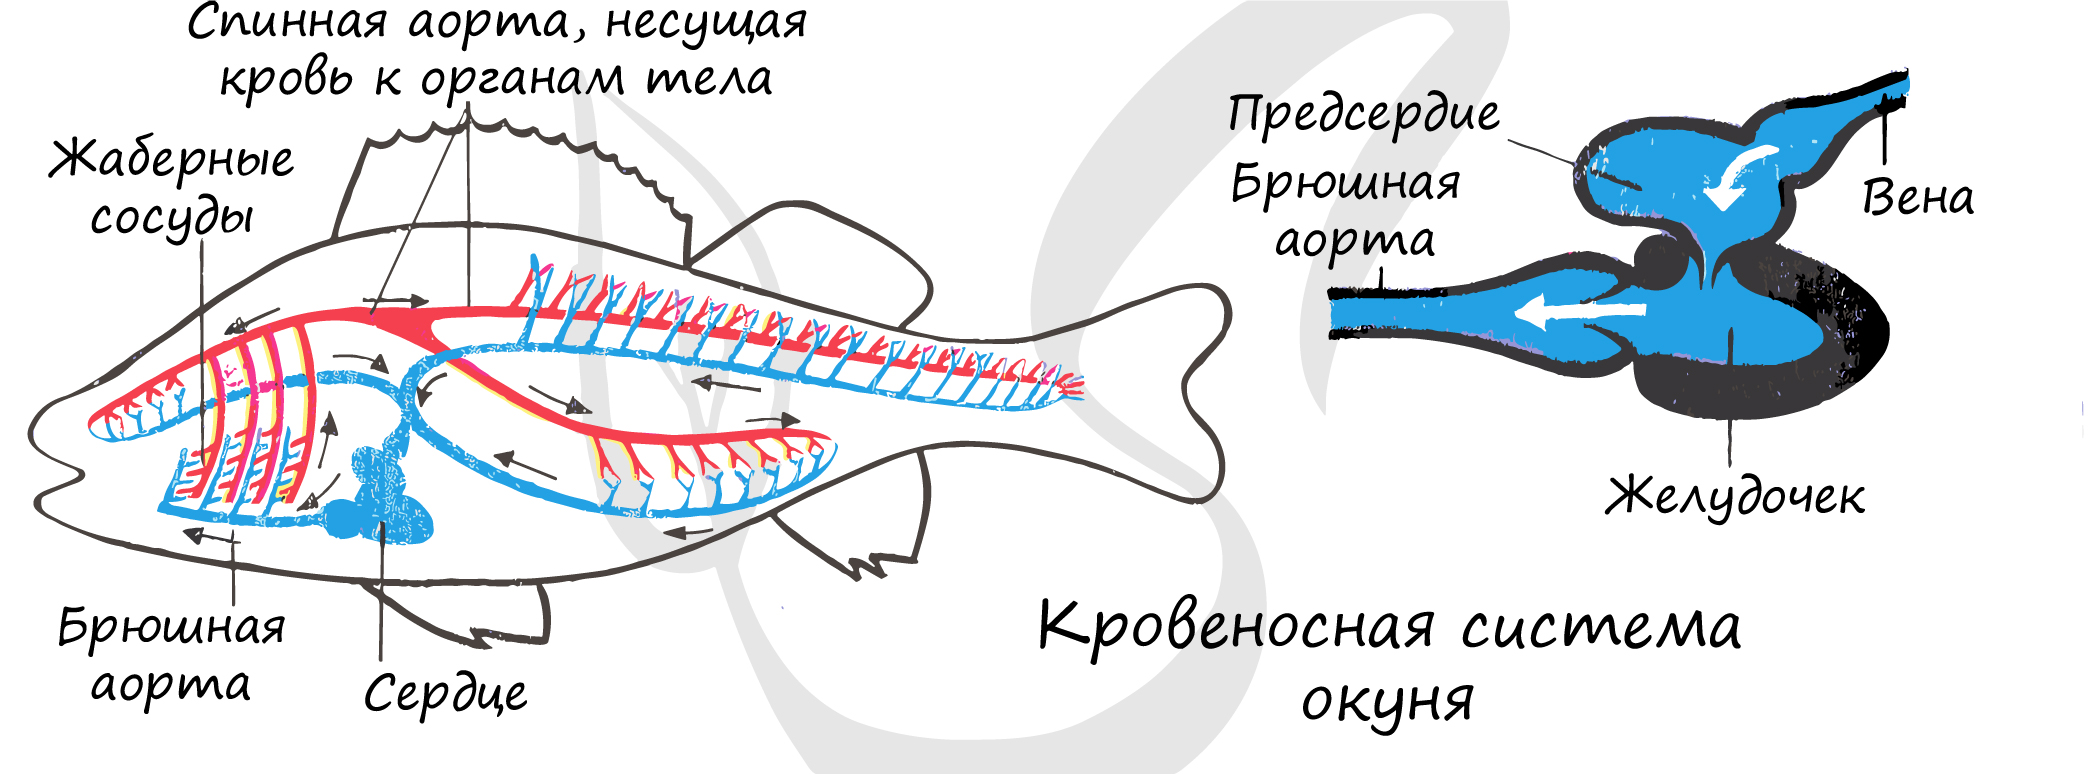 Схема строения кровеносной системы костной рыбы. Кровеносная система рыб схема 7 класс. Внутреннее строение речного окуня кровеносная система. Кровеносная система у рыб представлена кровообращения. Особенности кровообращения рыб